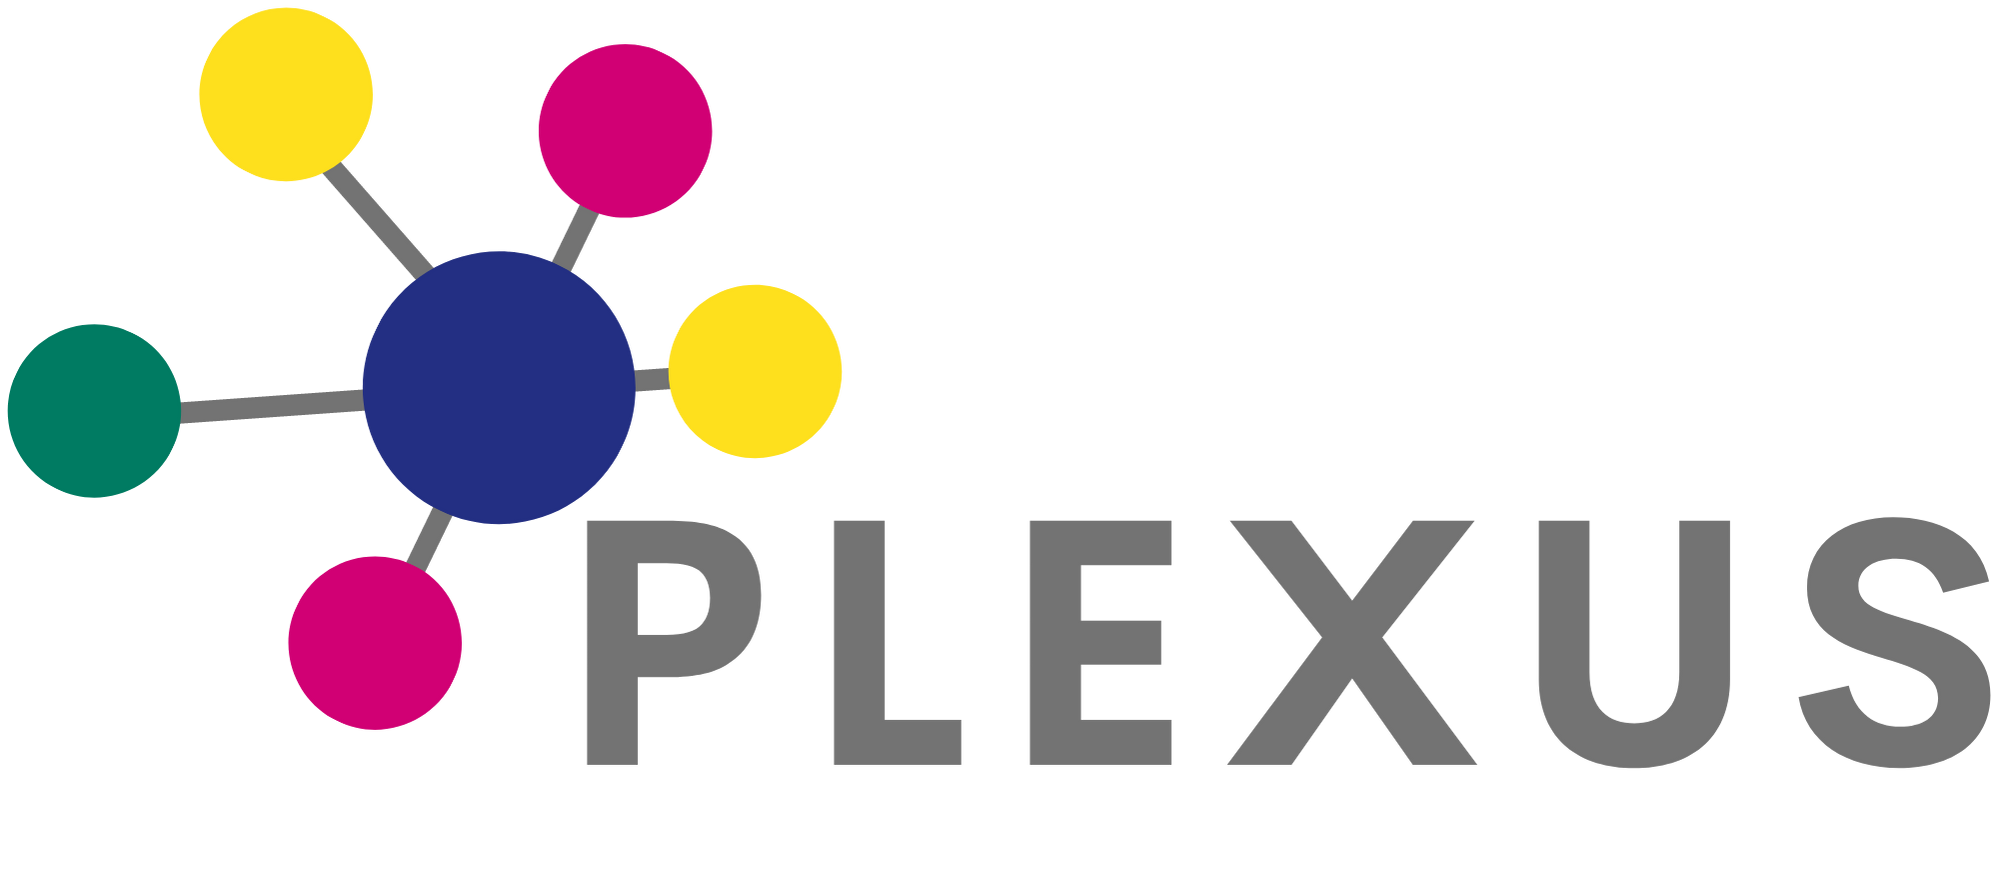 plex logo without tagline